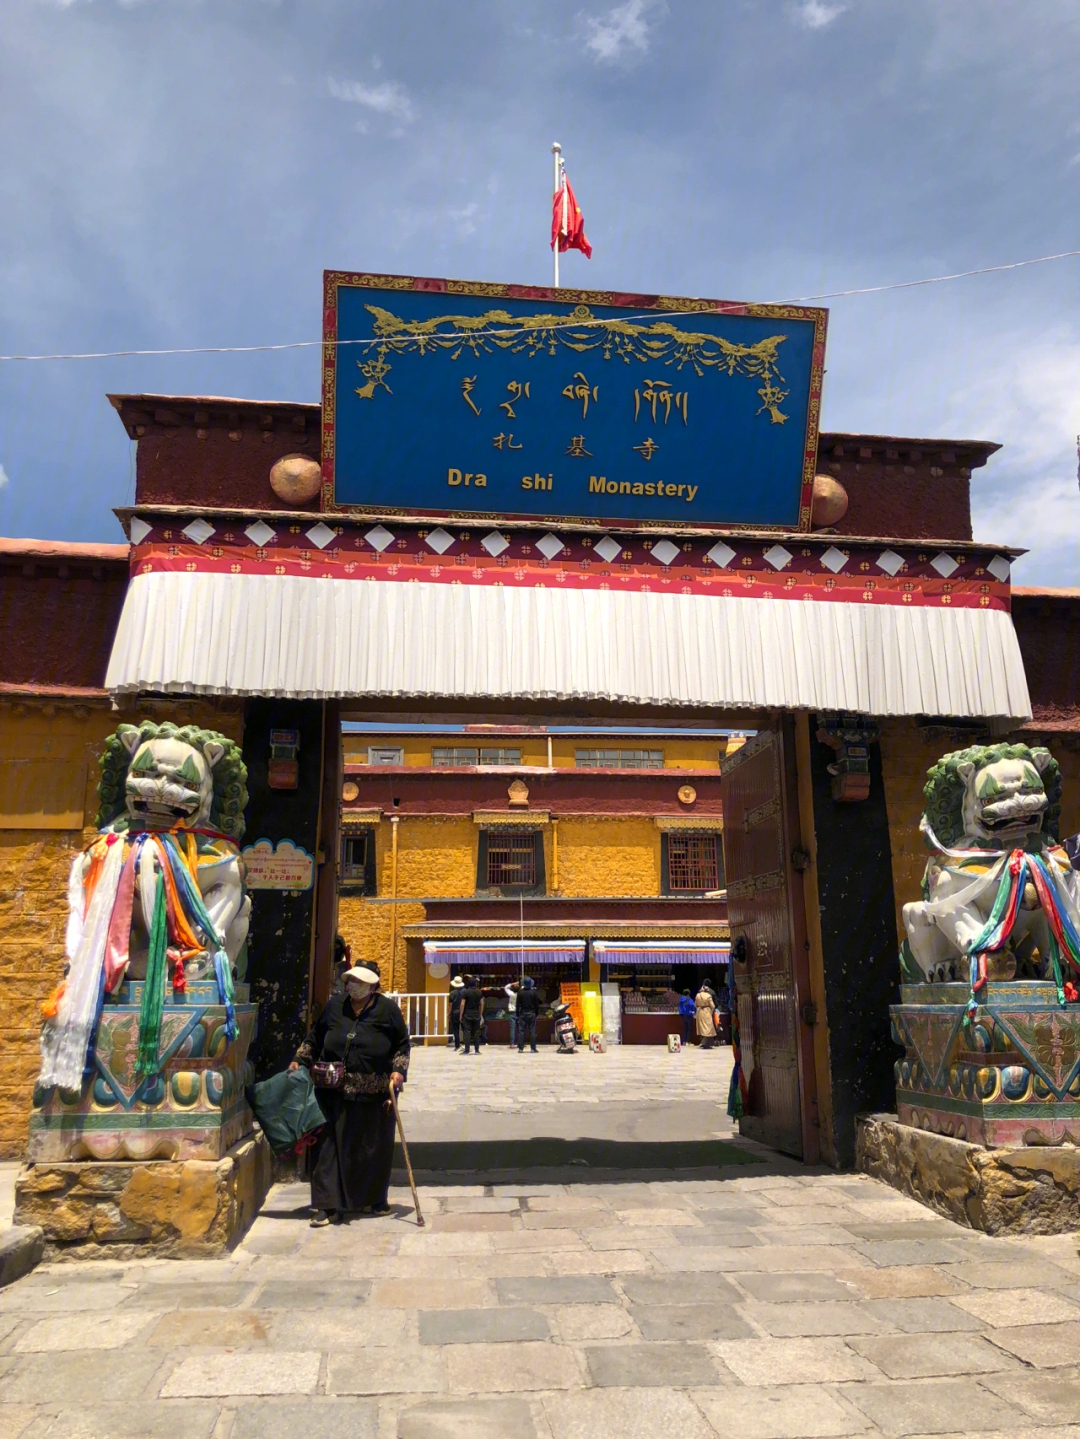 这也是西藏唯一一座财神庙,主要是供奉女财神扎基拉姆,寺庙不大,但